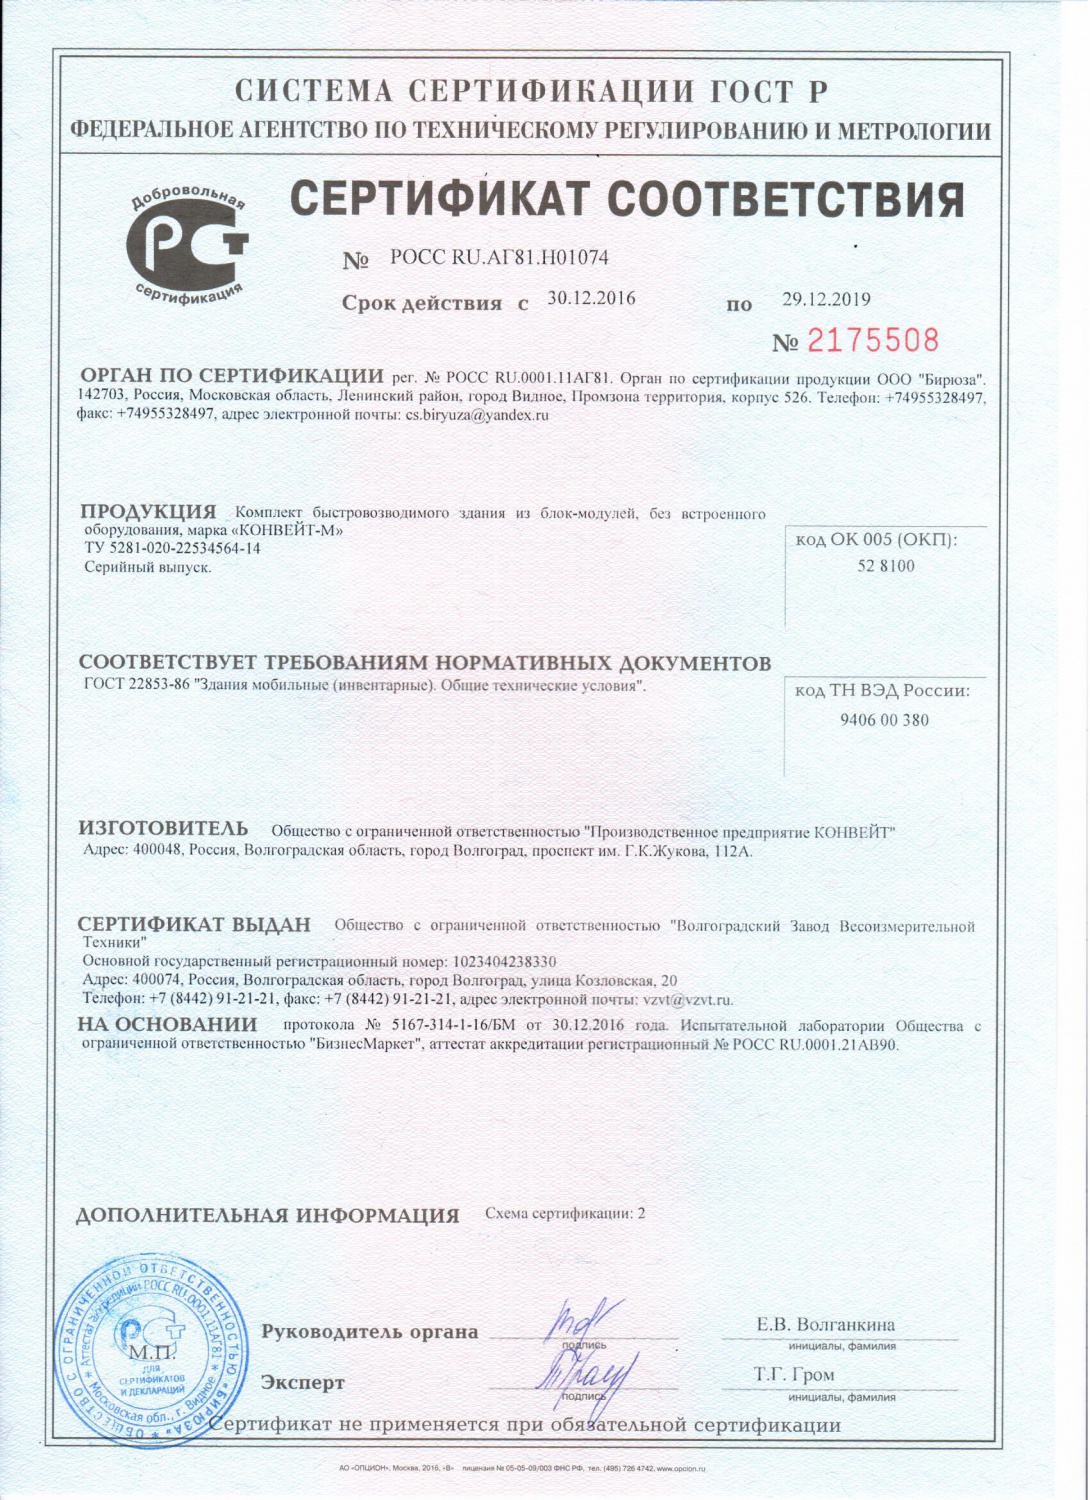 Сертификат соответствия КОНВЕЙТ-М ГОСТ 22853-86 (АРХИВНЫЙ)